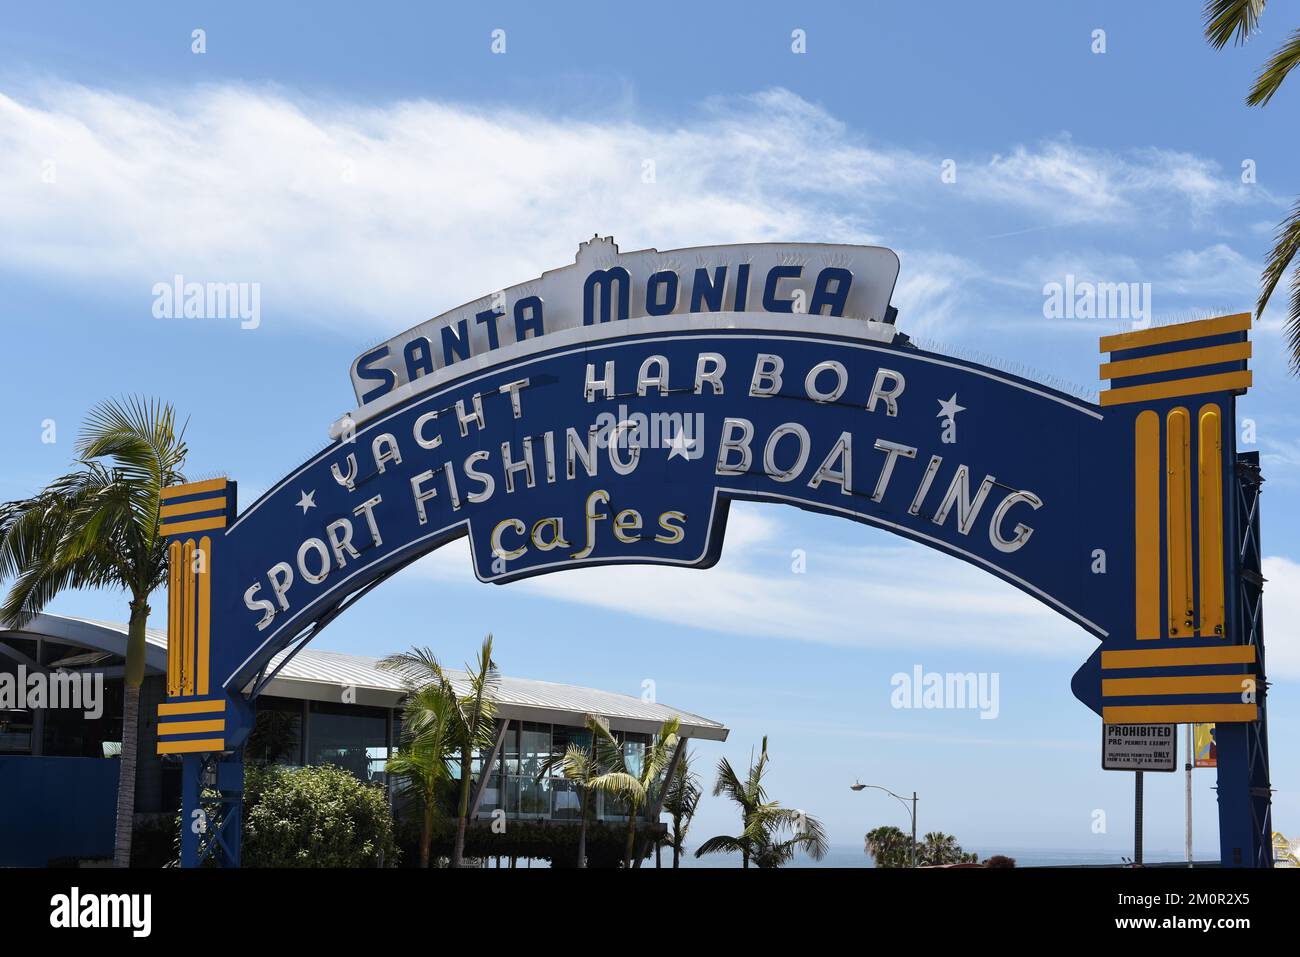 SANTA MONICA, CALIFORNIE - 25 MAI 2021 : panneau à l'entrée de la jetée de Santa Monica, une attraction touristique populaire. Banque D'Images